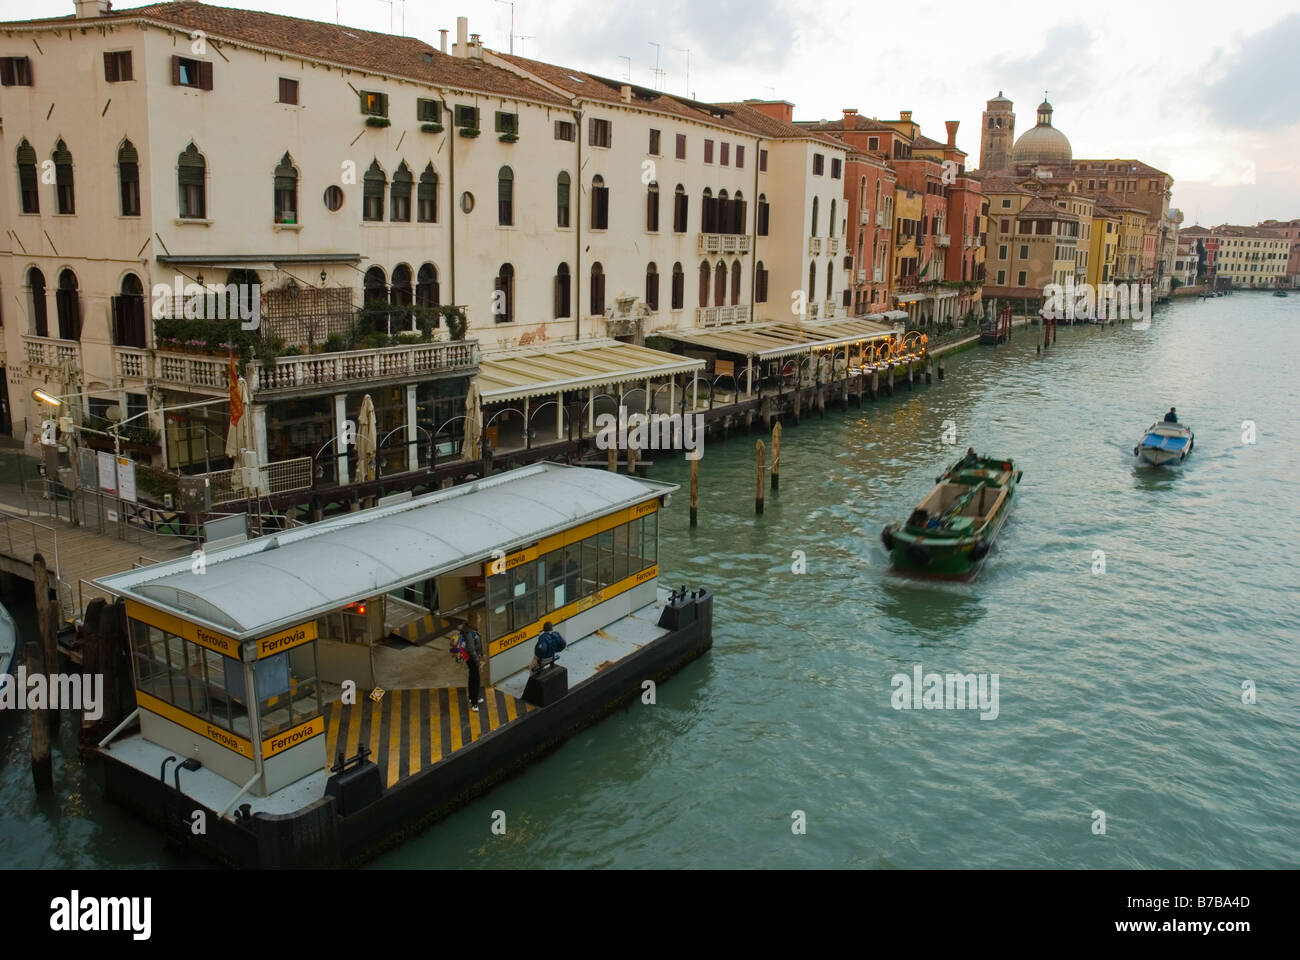 Le trafic sur le Grand Canal en vaporetto Ferrovia à Venise Italie Europe Banque D'Images